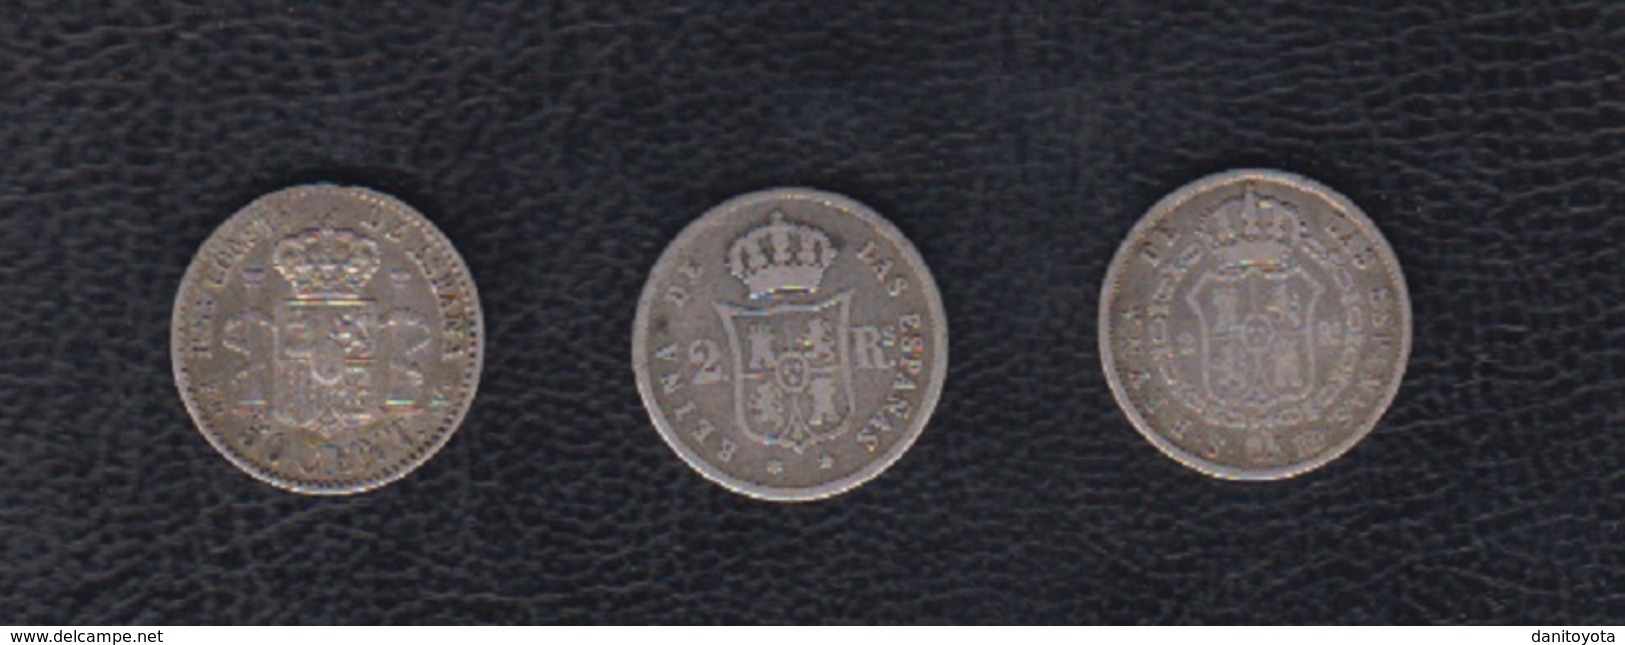 LOTE DE 3 MONEDAS DE PLATA.  2 REALES ISABEL II (2) Y 50 CTS ALFONSO XIII. - Monedas Provinciales